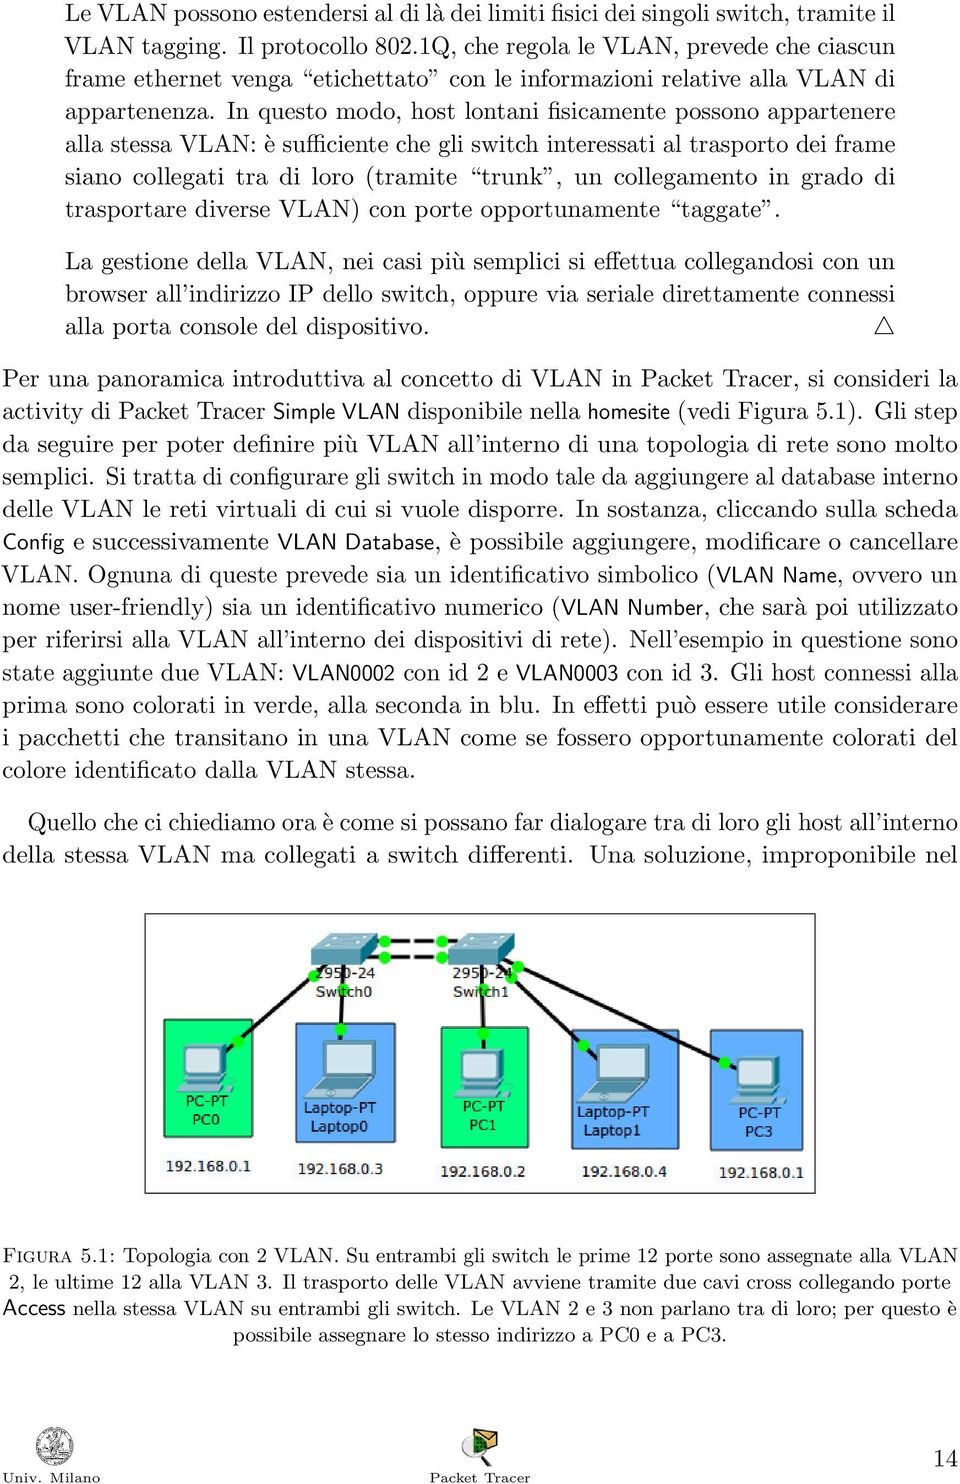 In questo modo, host lontani fisicamente possono appartenere alla stessa VLAN: è sufficiente che gli switch interessati al trasporto dei frame siano collegati tra di loro (tramite trunk, un